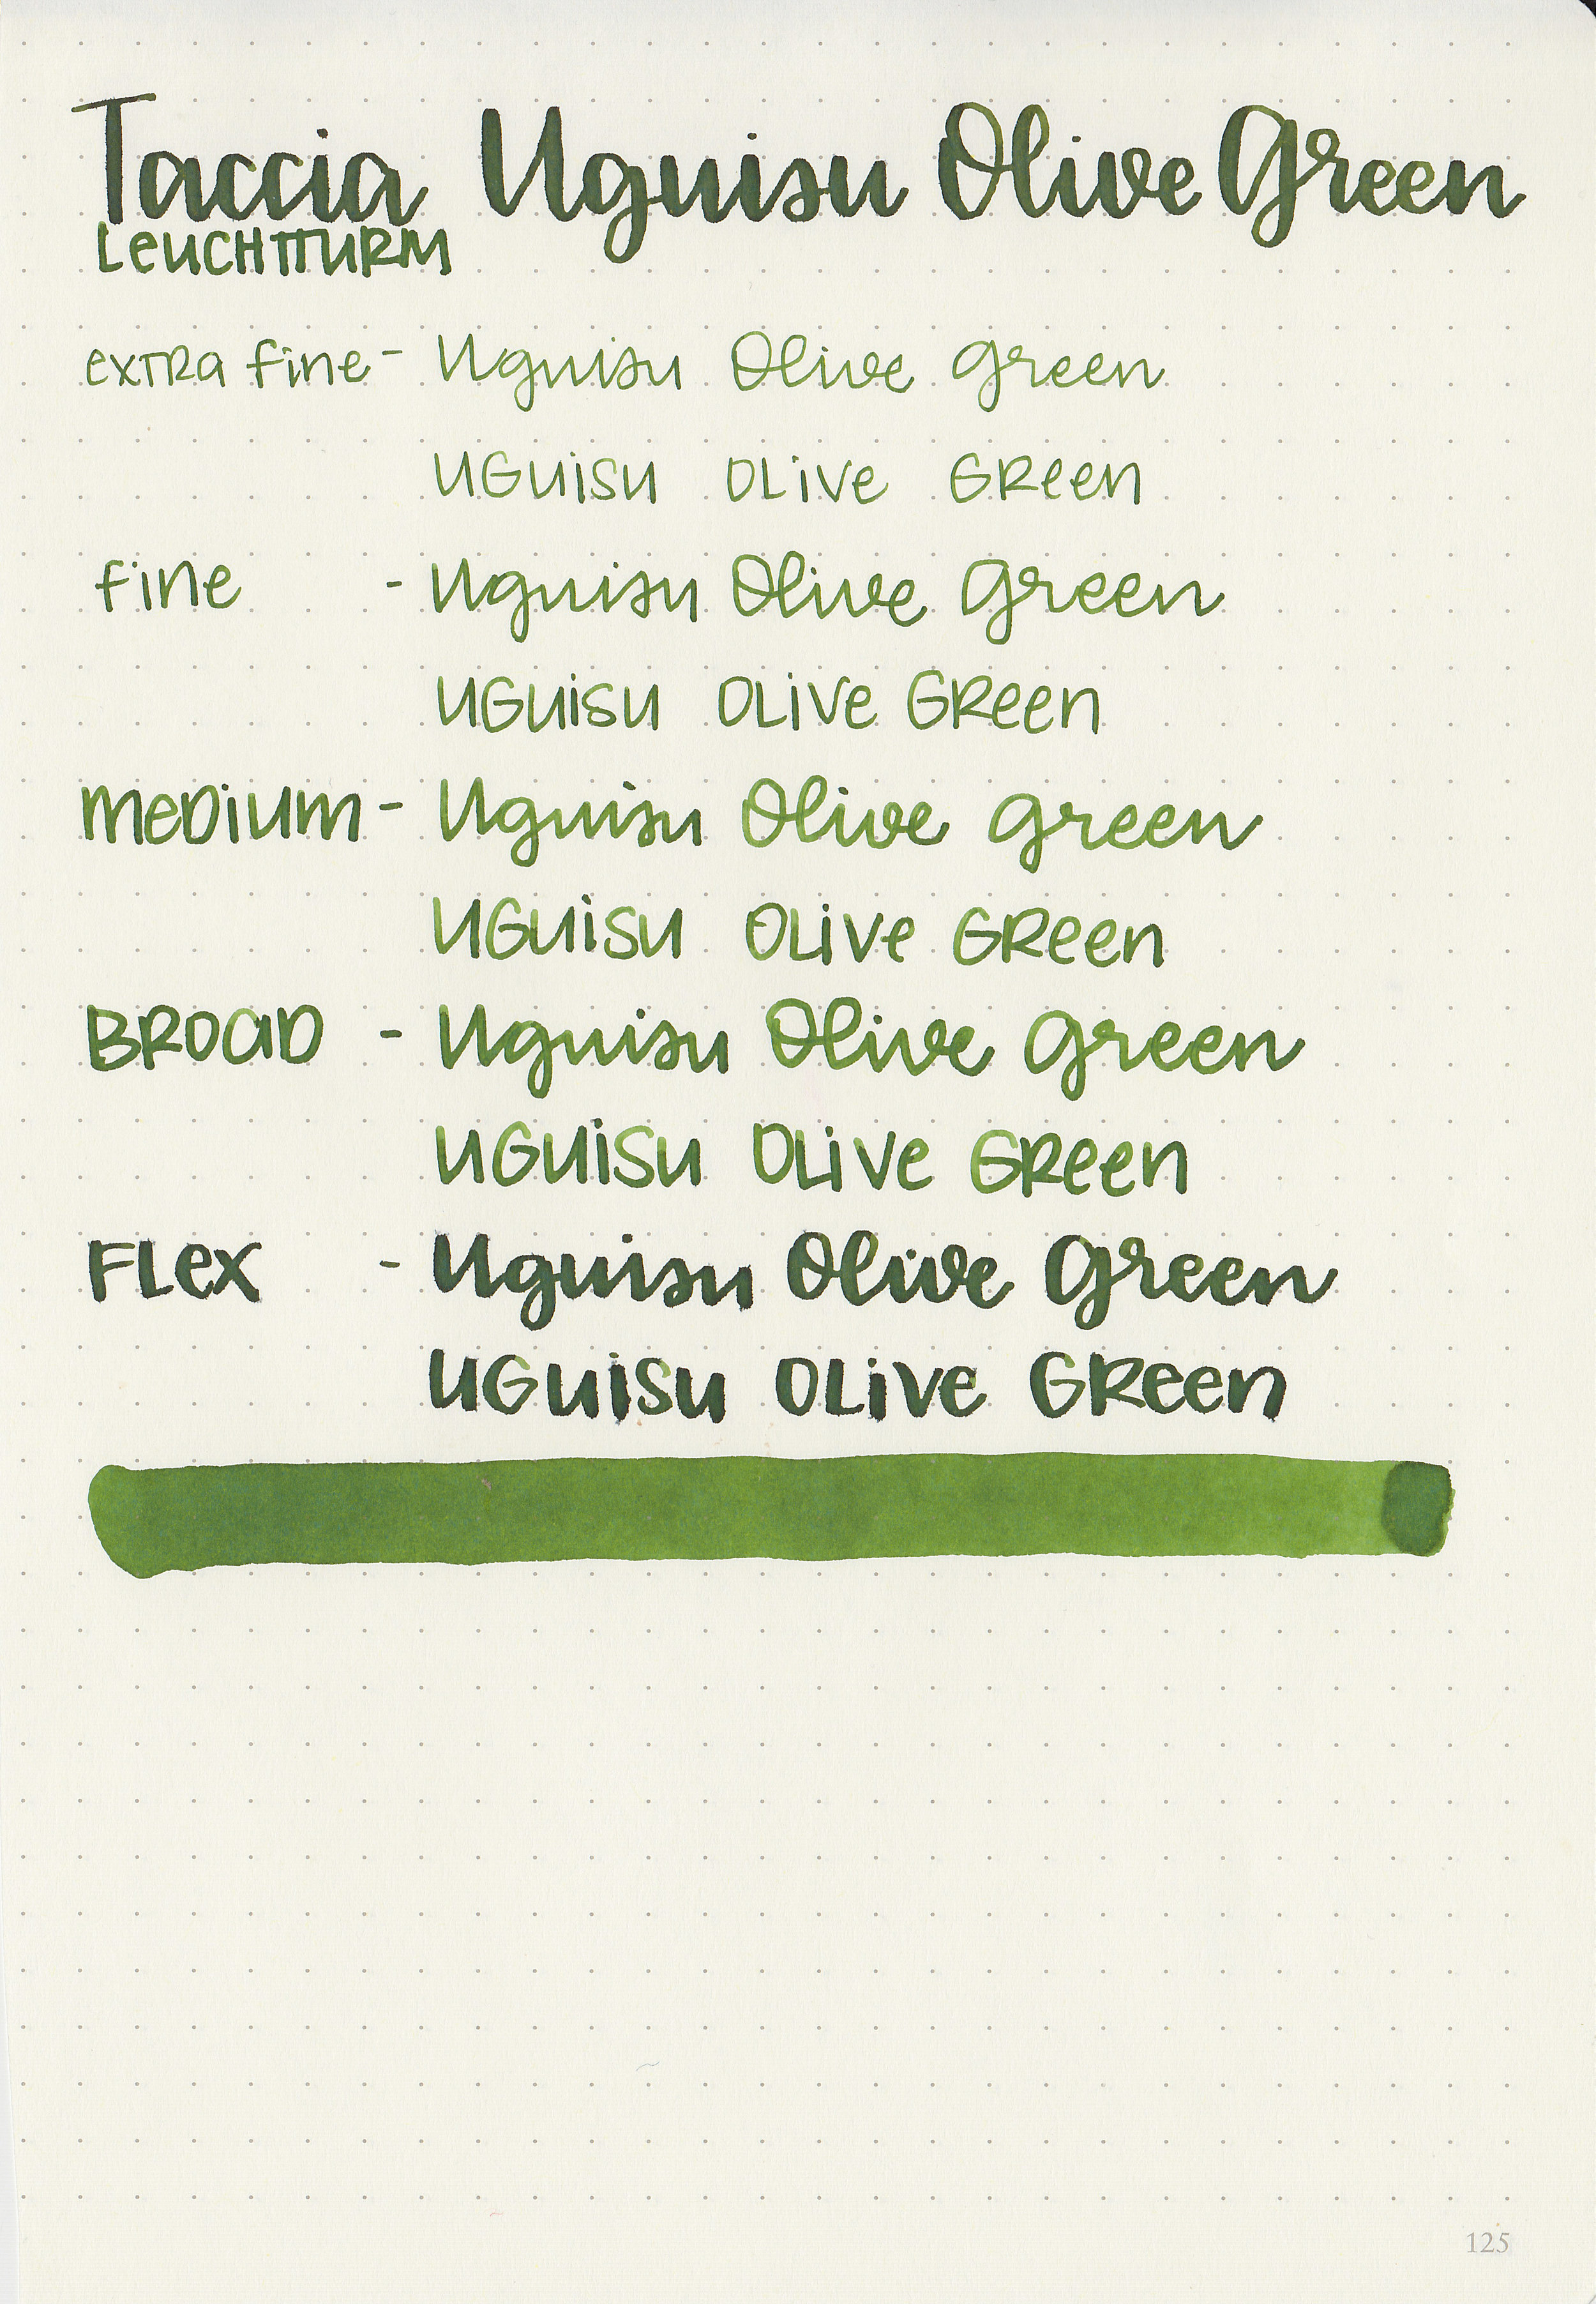 tac-uguisu-olive-green-9.jpg